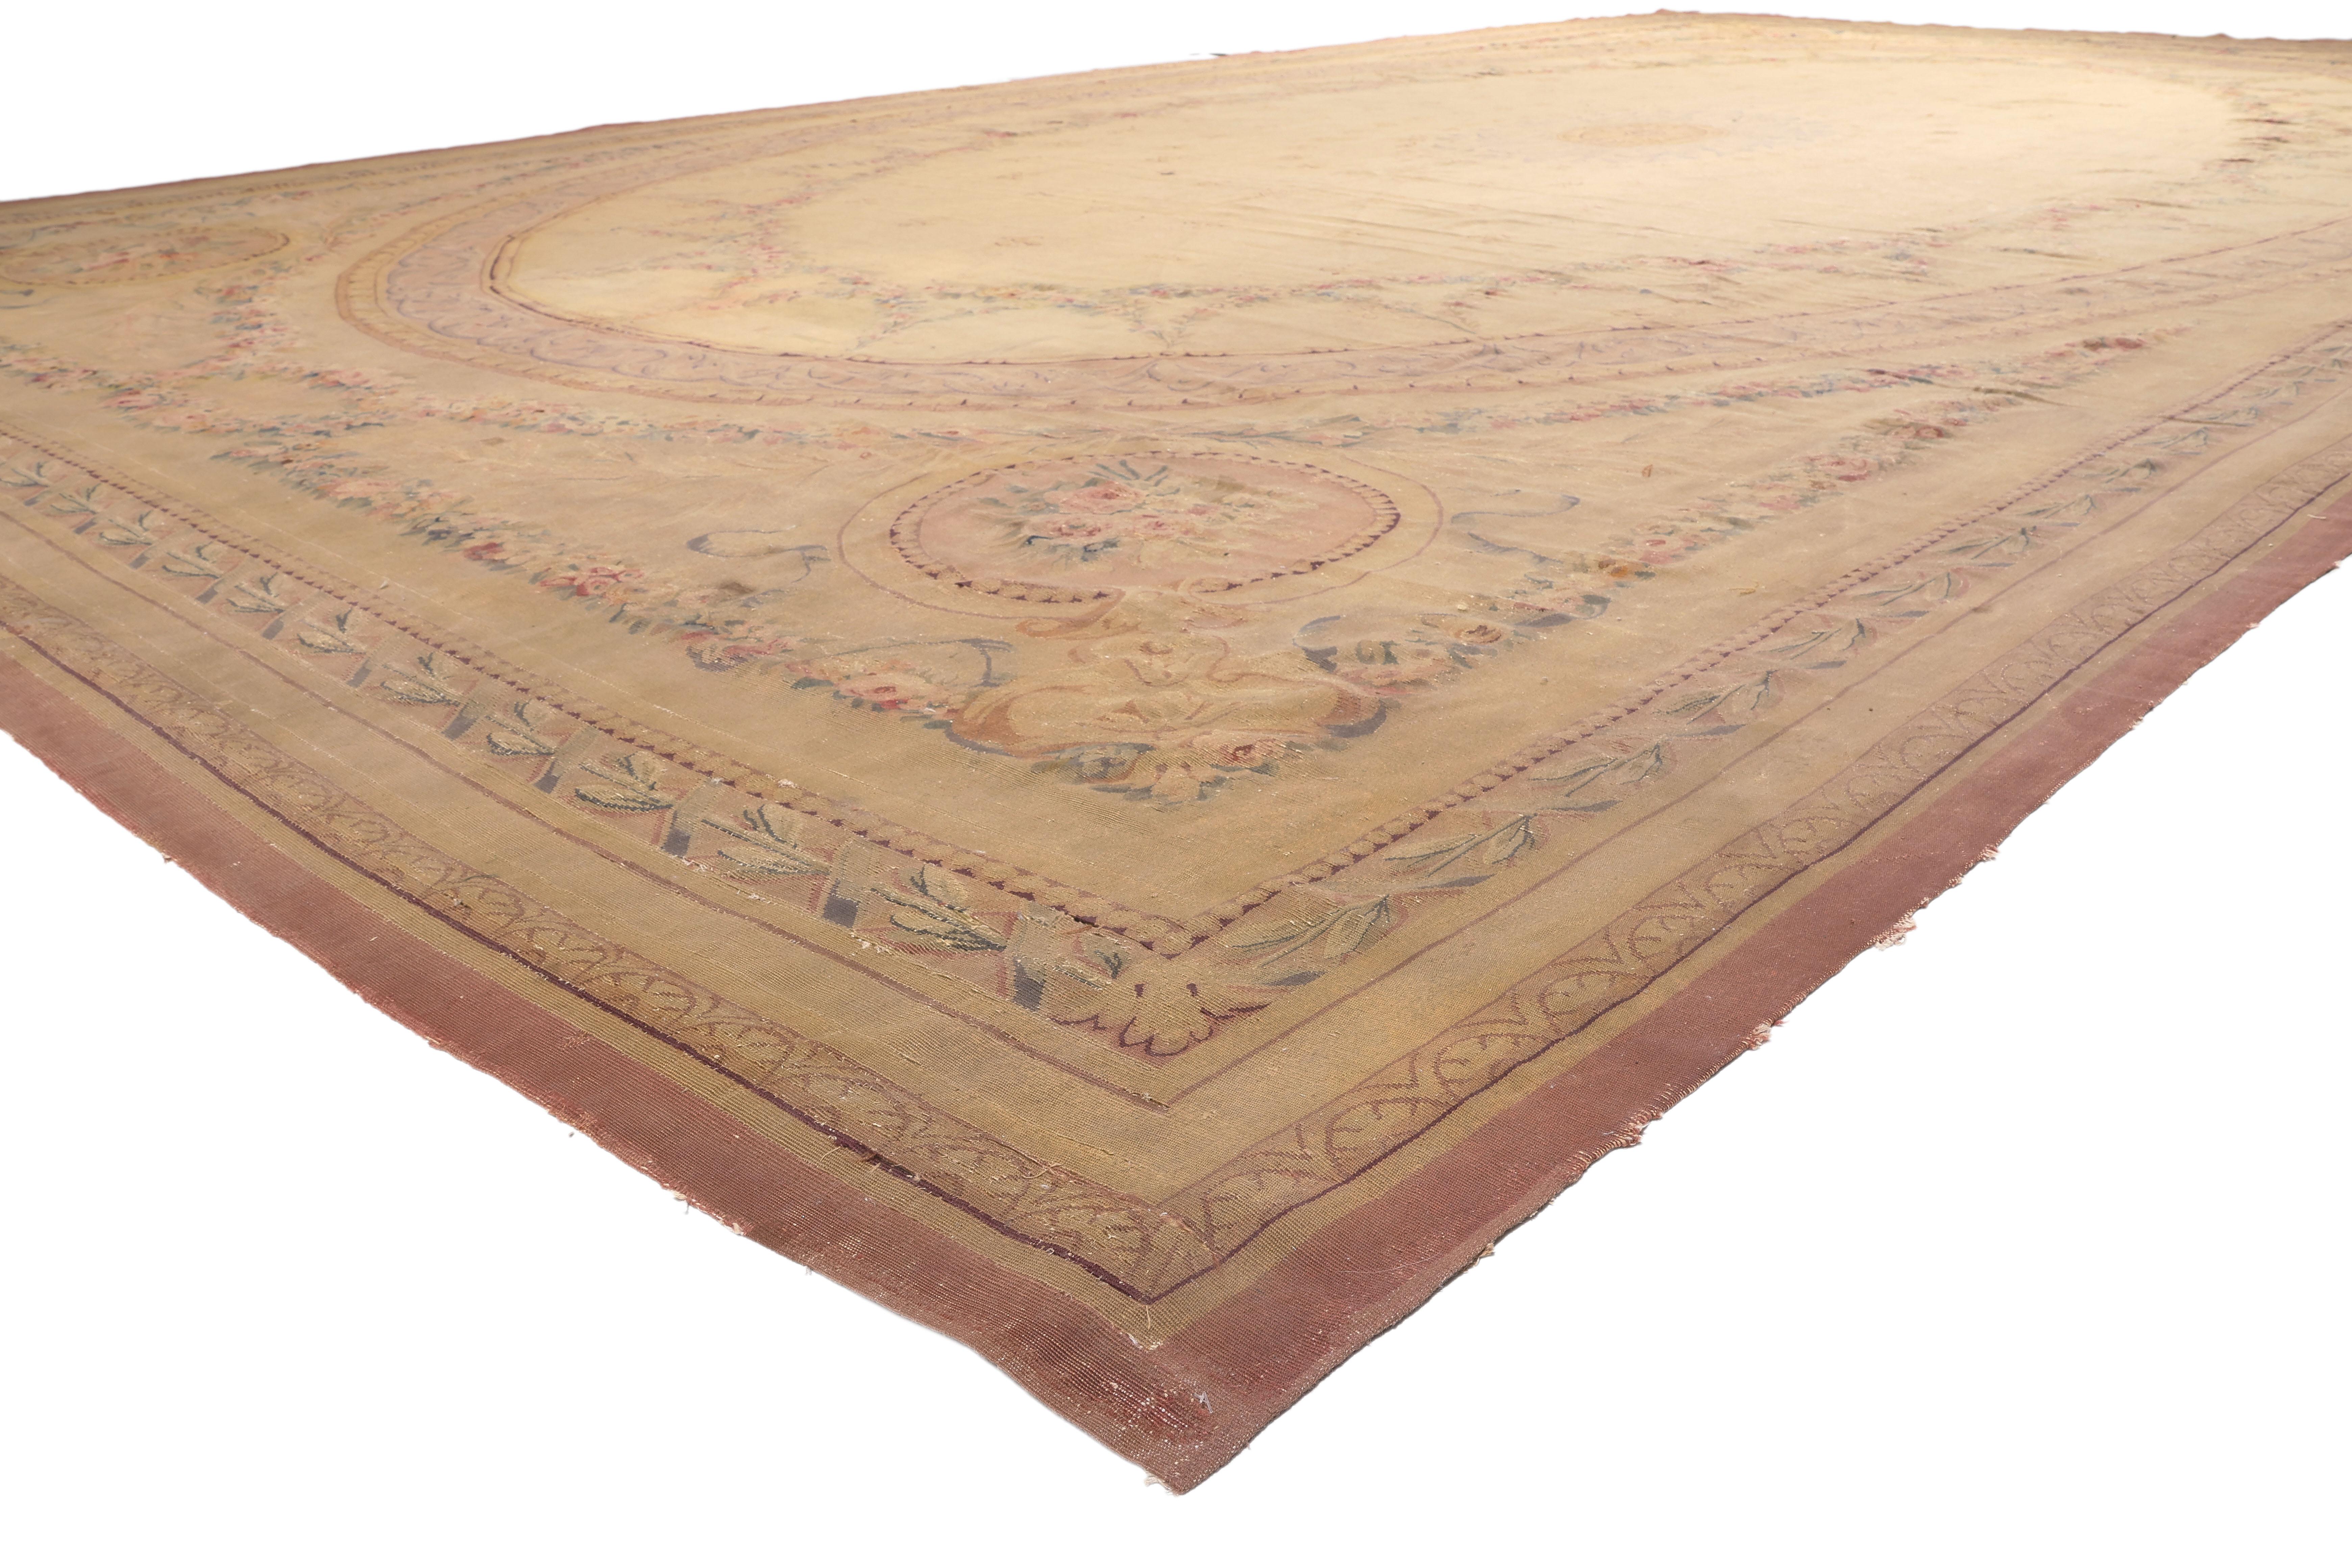 74394 Antiker Aubusson-Teppich des späten 19. Jahrhunderts, 14'06 x 25'03. Ein französischer Aubusson-Teppich ist eine Art Flachgewebe, das seinen Ursprung in der Stadt Aubusson in der Region Creuse in Zentralfrankreich hat. Diese Teppiche haben